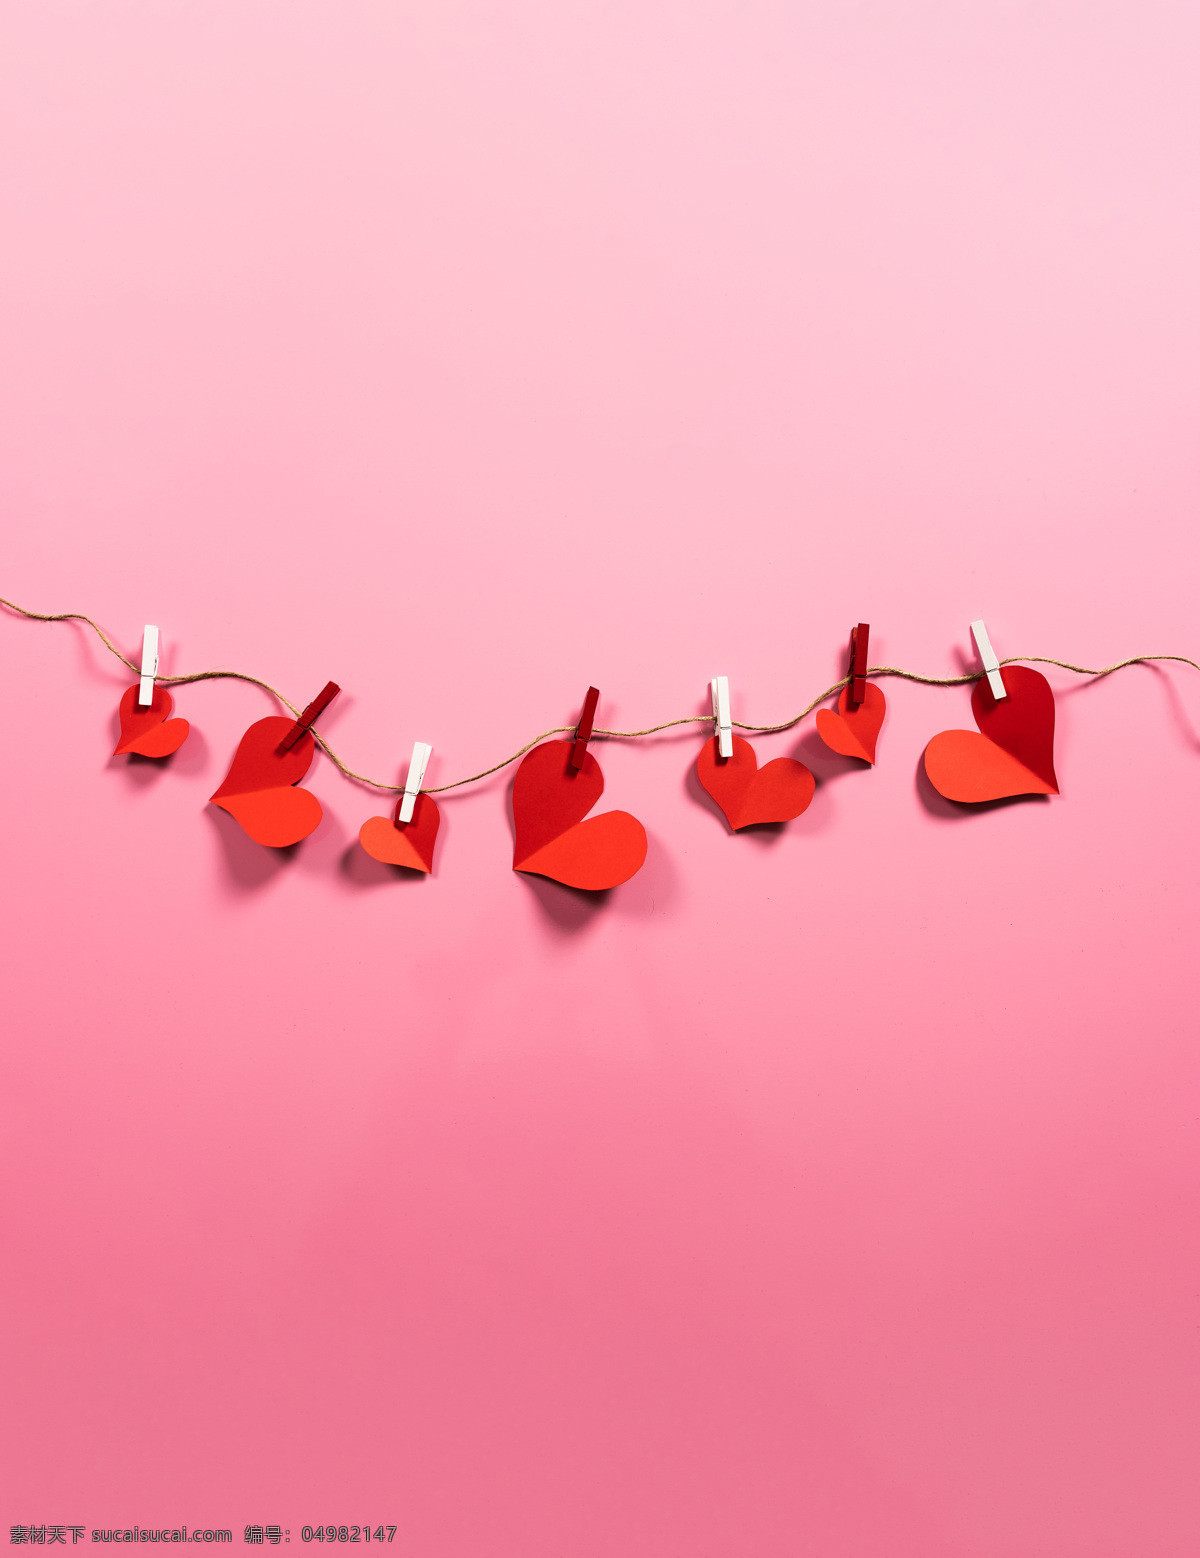 心形纸 折纸 心 粉色背景 背景素材 可爱 爱情 情人节 七夕 庆祝 纪念 设计素材 生活百科 生活素材